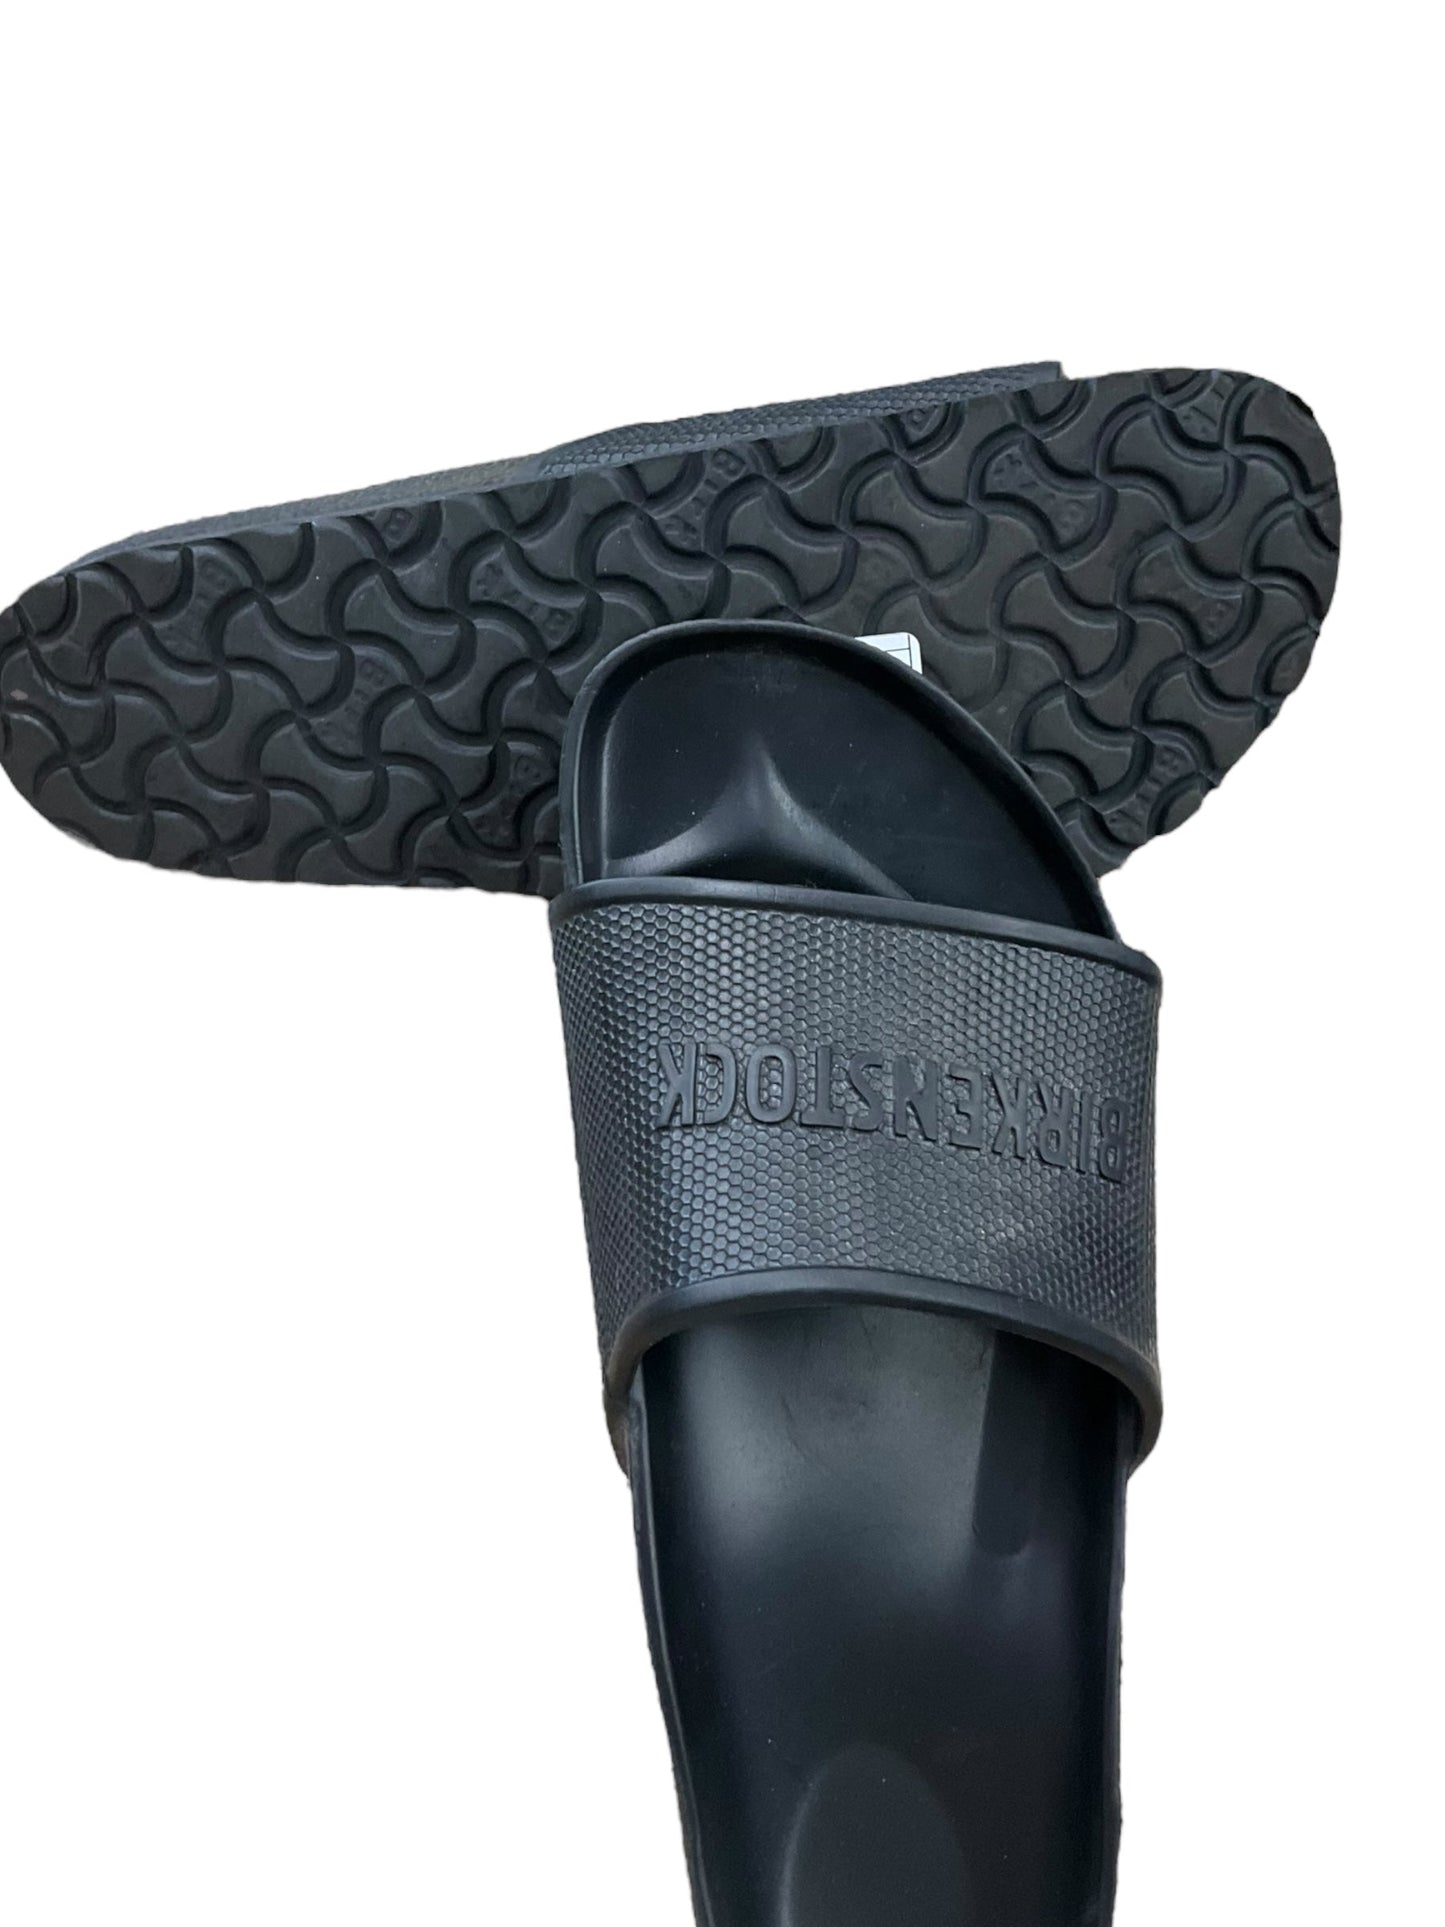 Black Sandals Designer Birkenstock, Size 10